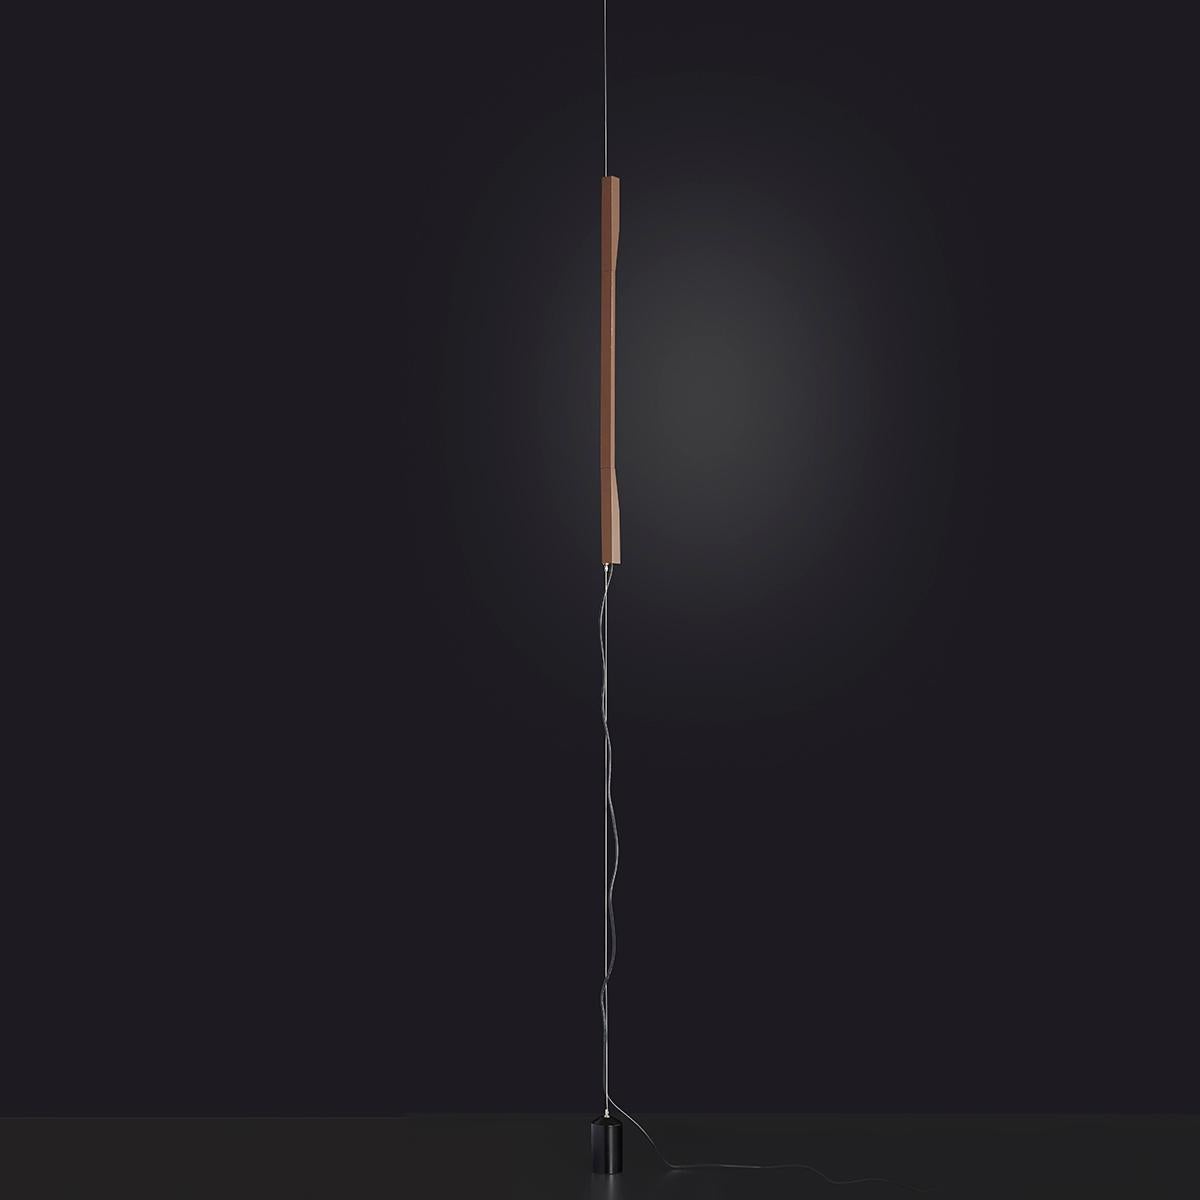 Lámpara de suspensión 'Ilo' diseñada por David Lopez Quincoce en 2019.
Lámpara led regulable que da luz indirecta. Deslizamiento vertical de la varilla de aluminio anodizado bronce satinado sobre un cable de acero de techo a suelo. Contrapeso